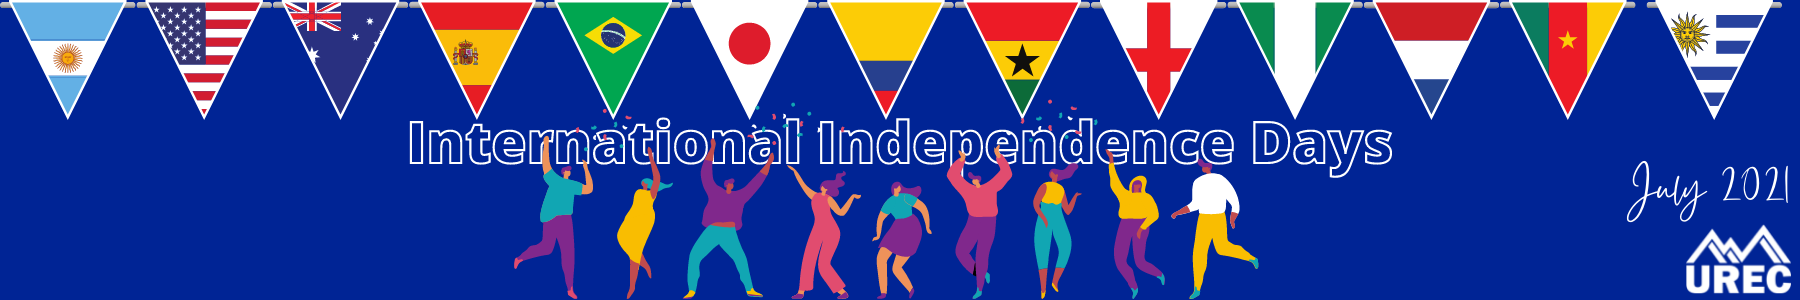 International Independence Days Month Celebration Banner  1 